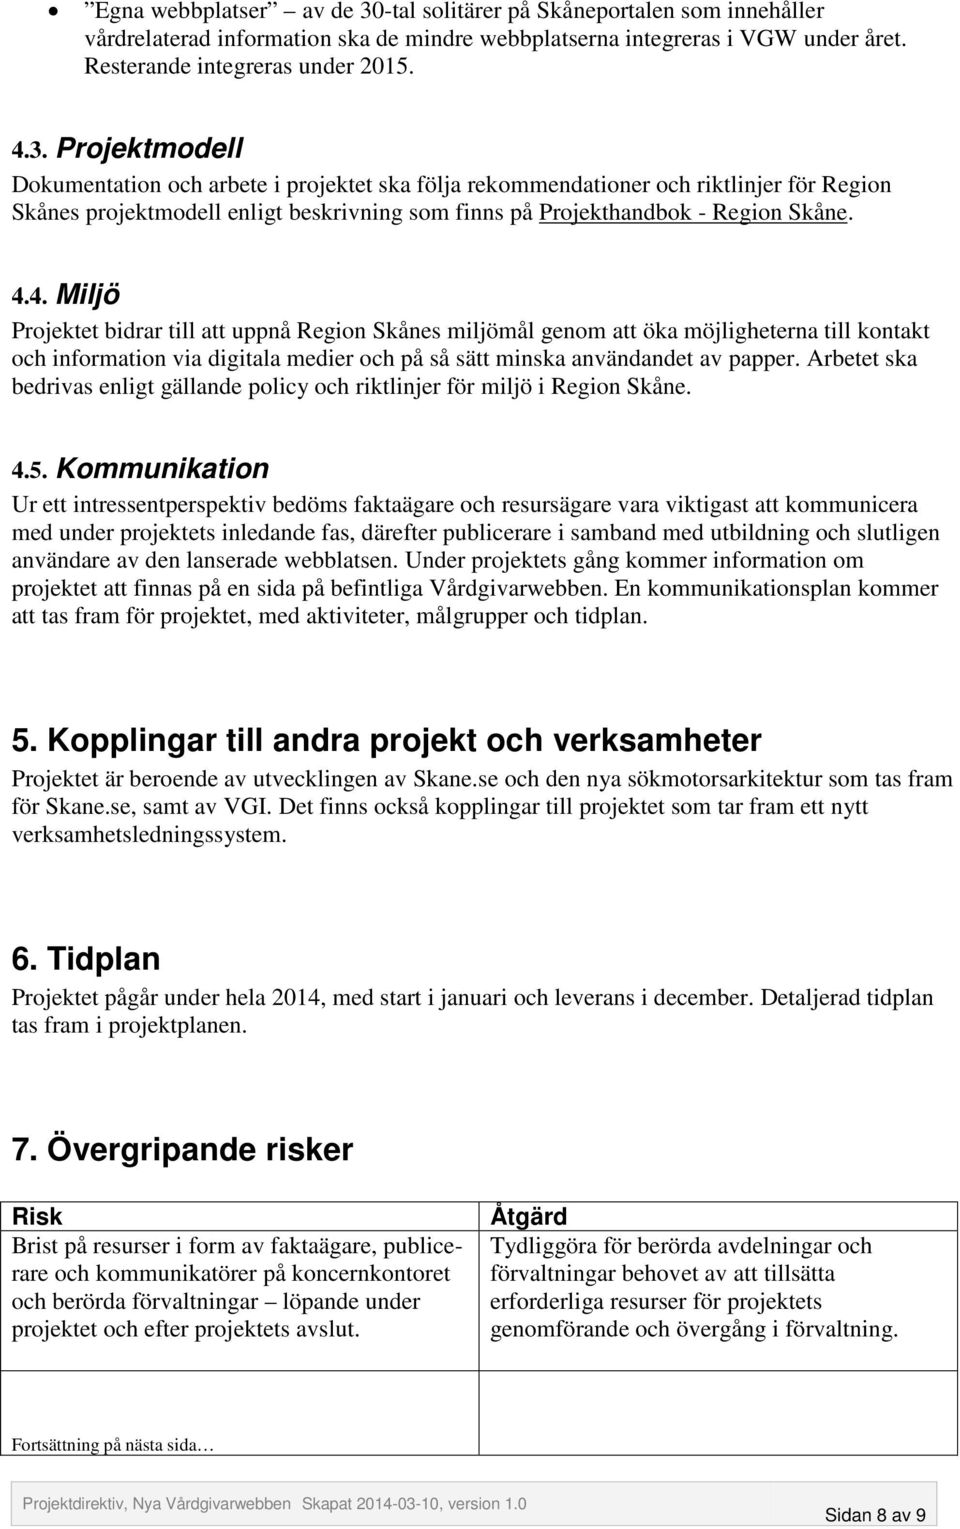 Projektmodell Dokumentation och arbete i projektet ska följa rekommendationer och riktlinjer för Region Skånes projektmodell enligt beskrivning som finns på Projekthandbok - Region Skåne. 4.